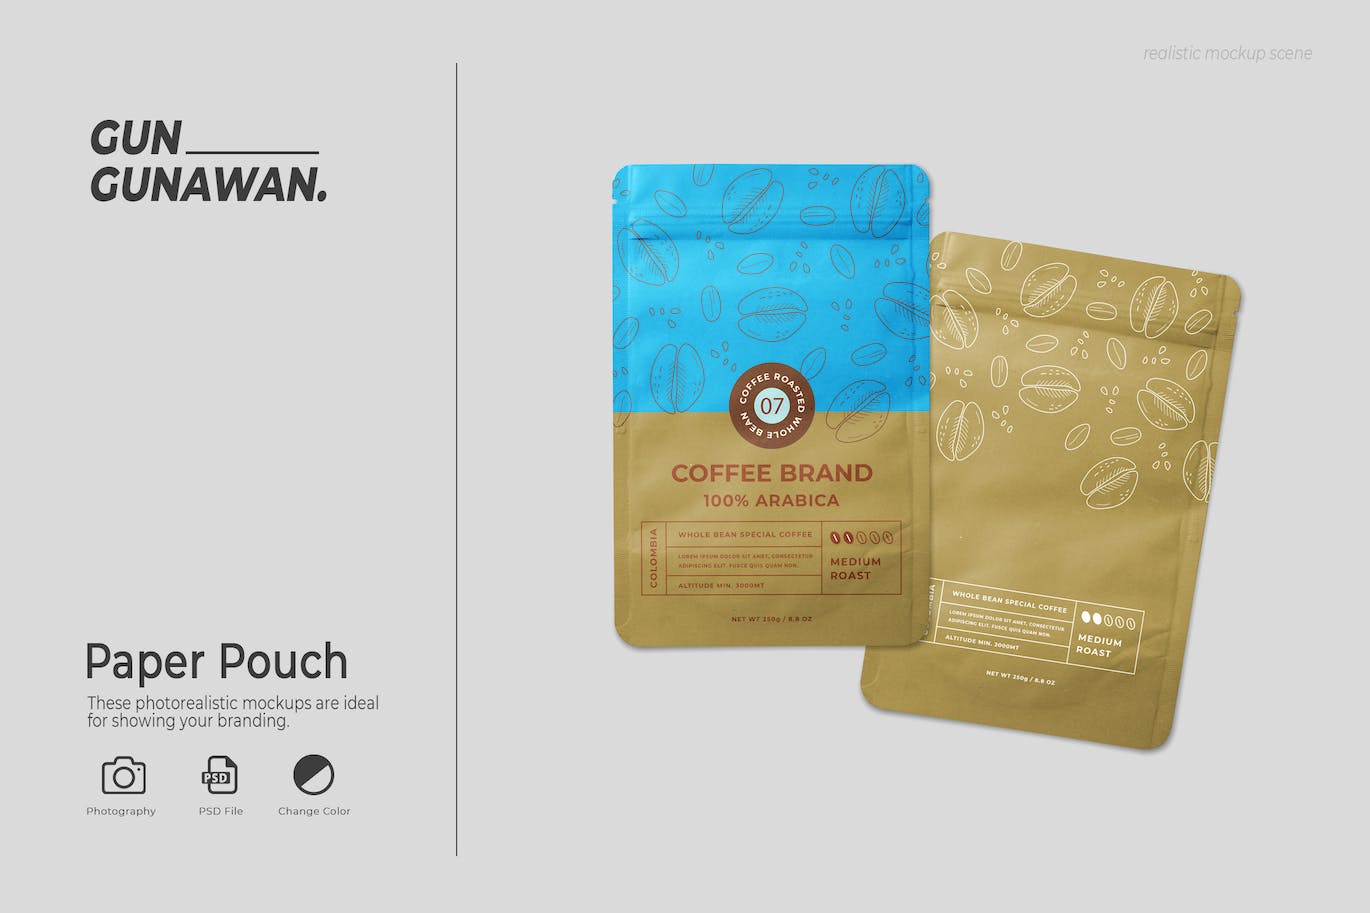 咖啡粉袋包装设计样机 Paper Pouch Mockup 样机素材 第1张